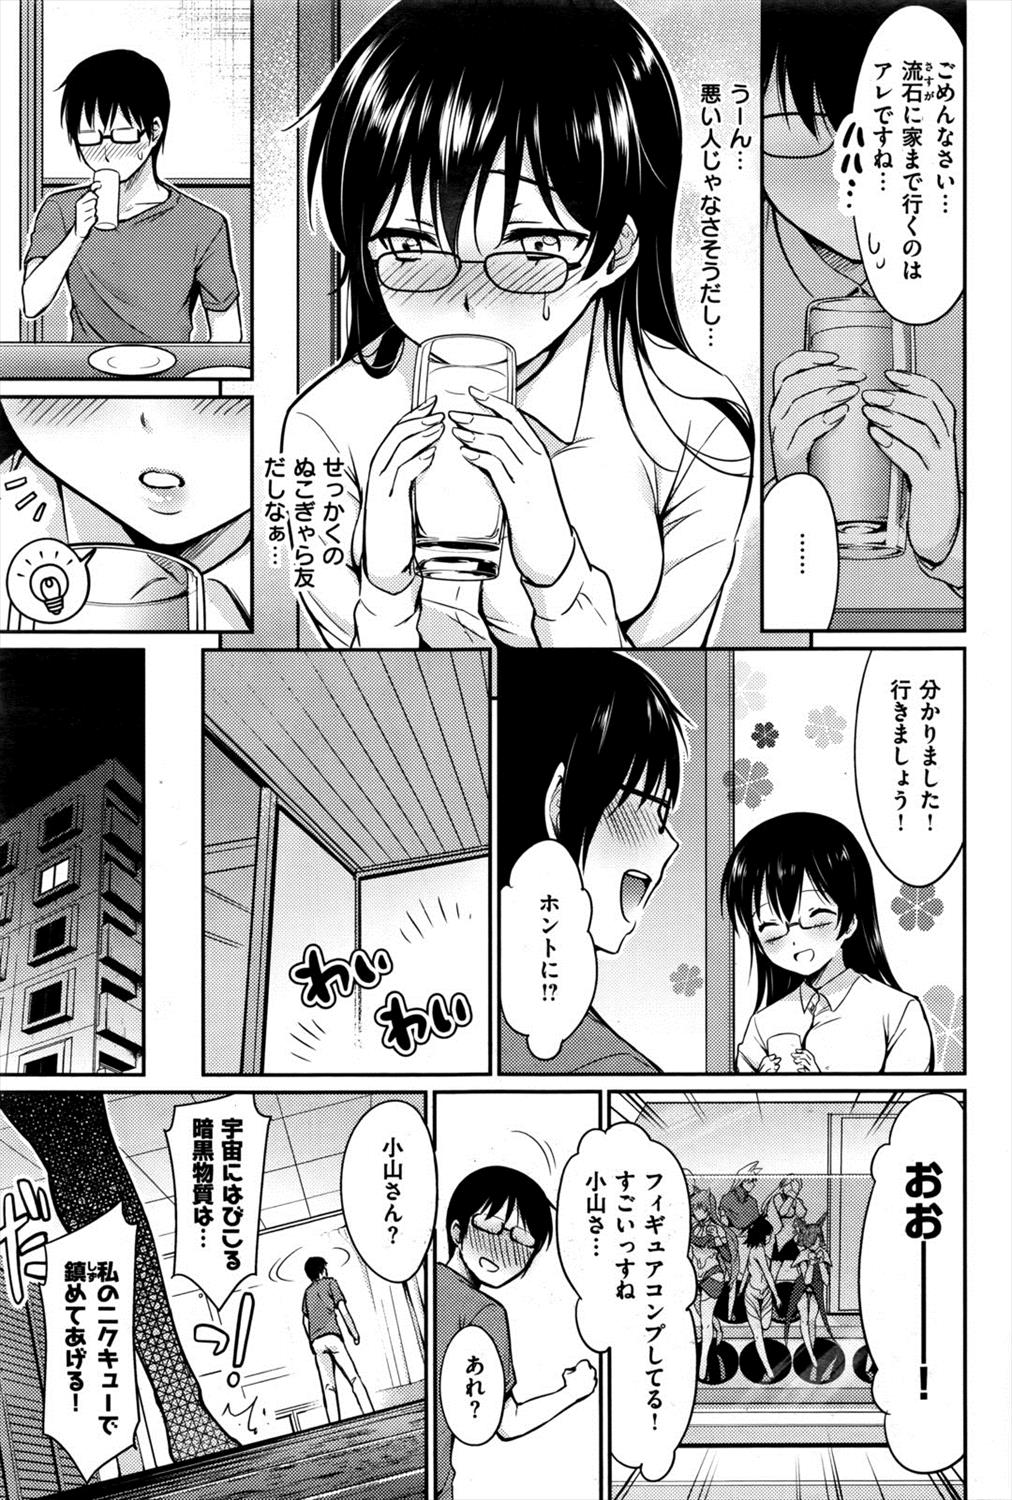 【エロ漫画】合コンで同じ趣味のメガネ巨乳と出会い彼女の家に行き露出度高いコスプレ見て勃起してイチャラブセックスしちゃったｗｗｗ